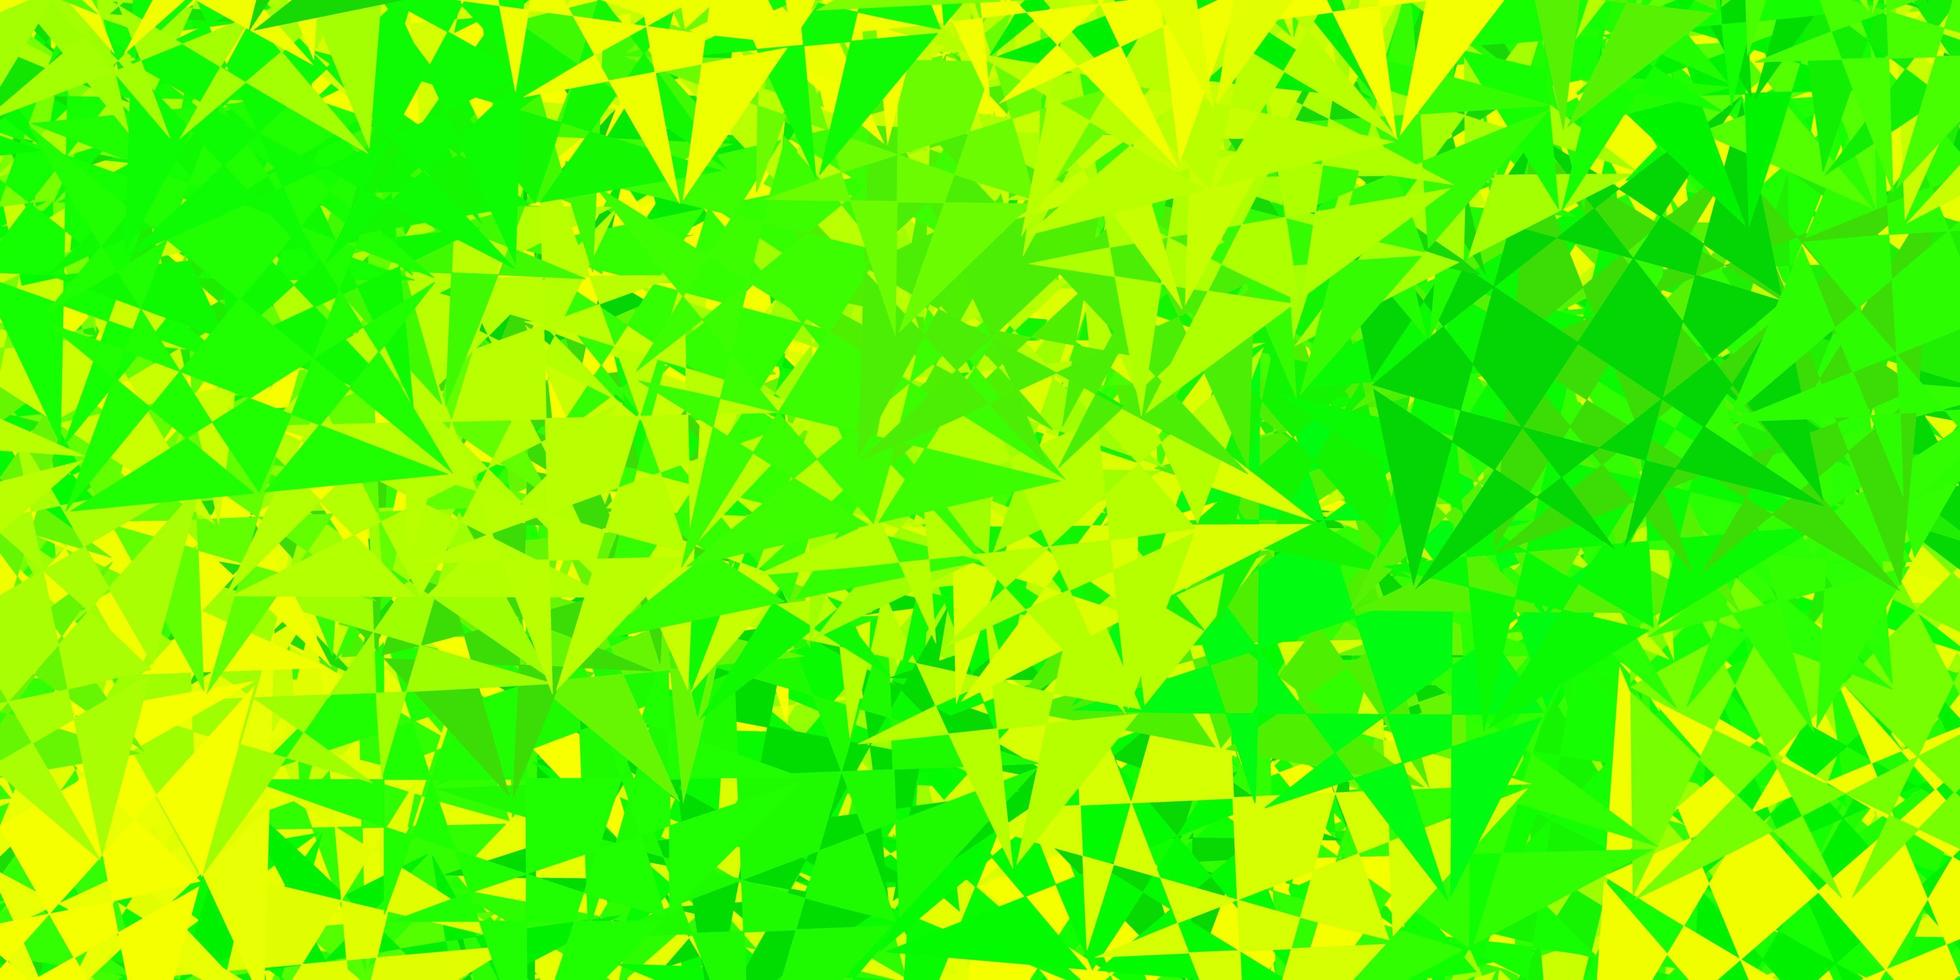 hellgrünes, gelbes Vektorlayout mit Dreiecksformen. vektor